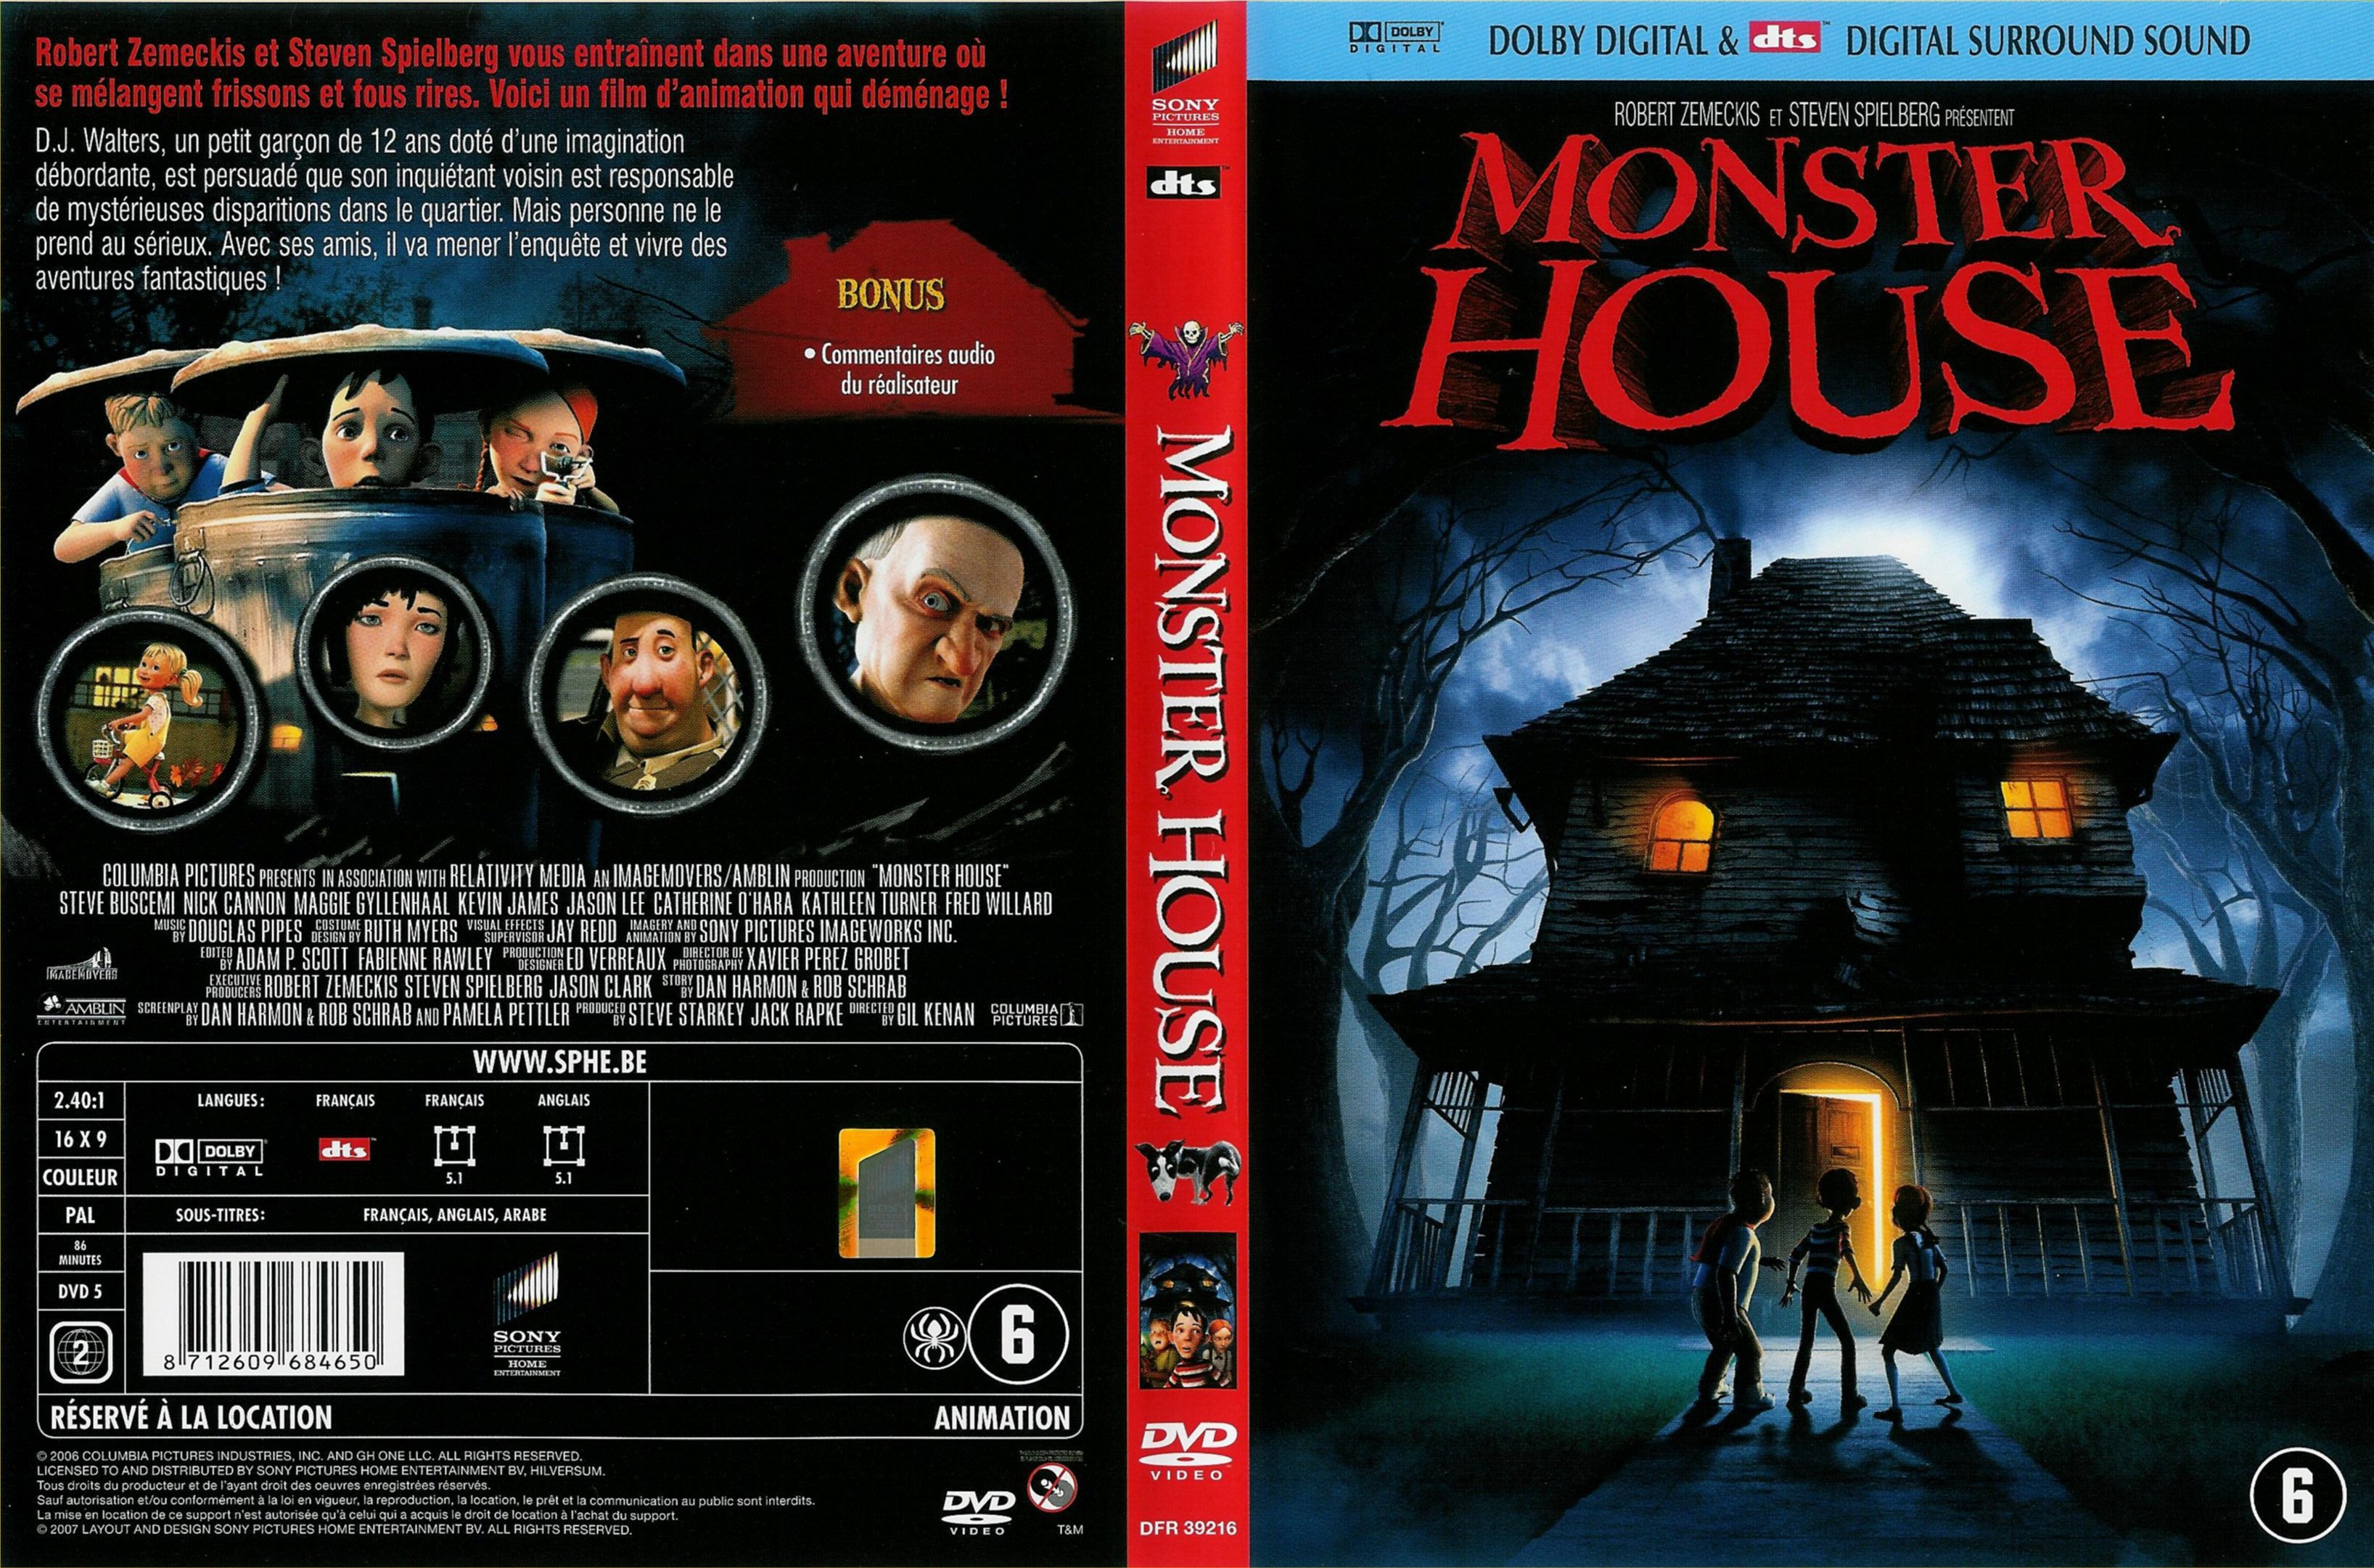 Jaquette DVD Monster house v3